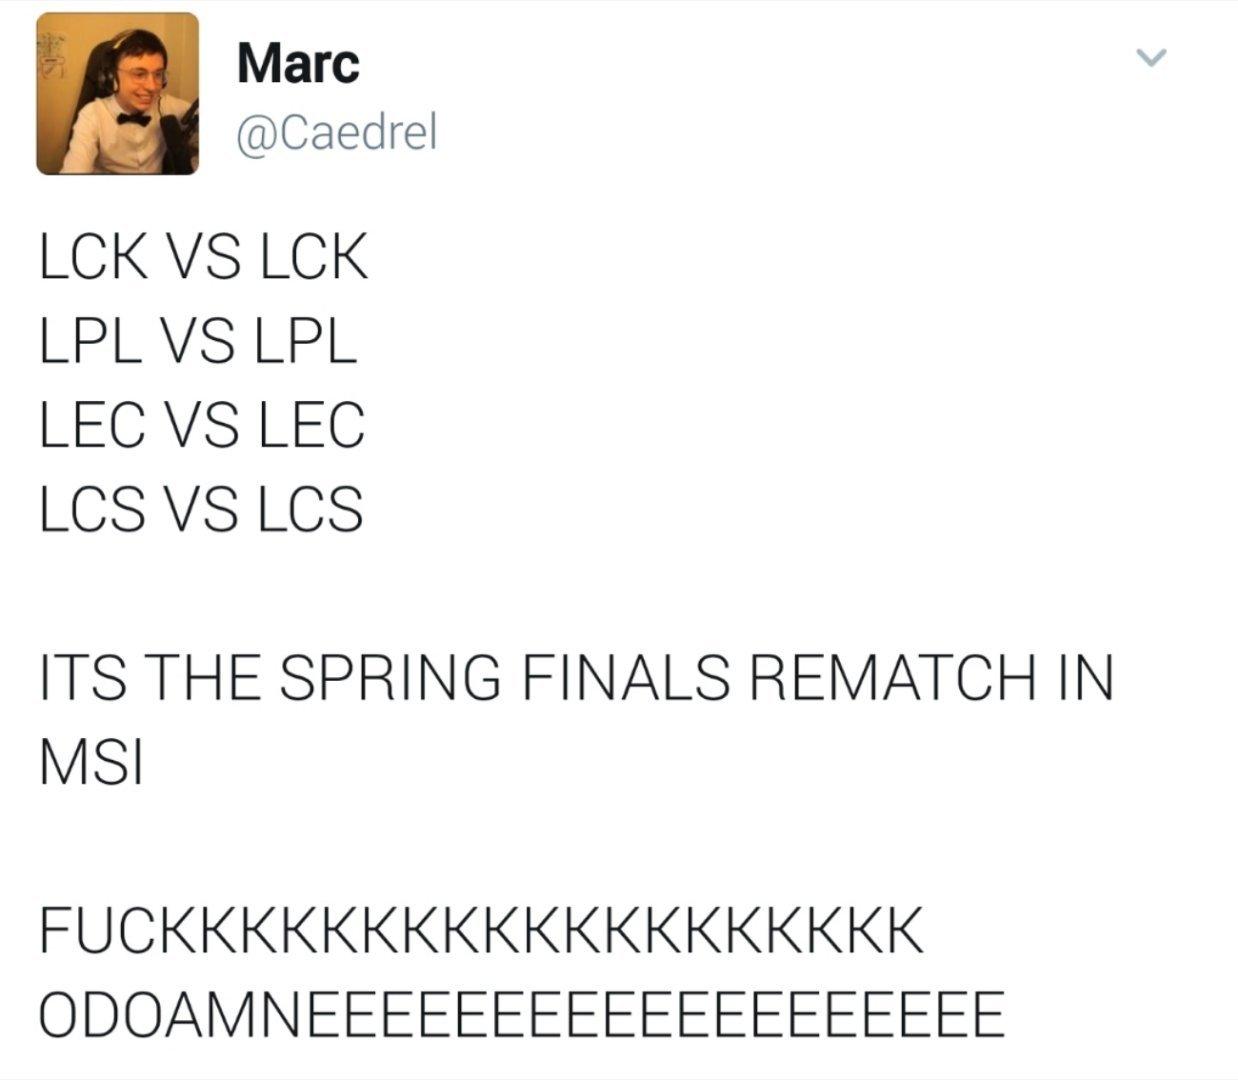 四大赛区重演春决[看]

LCK vs LCK
LPL vs LPL
LEC v